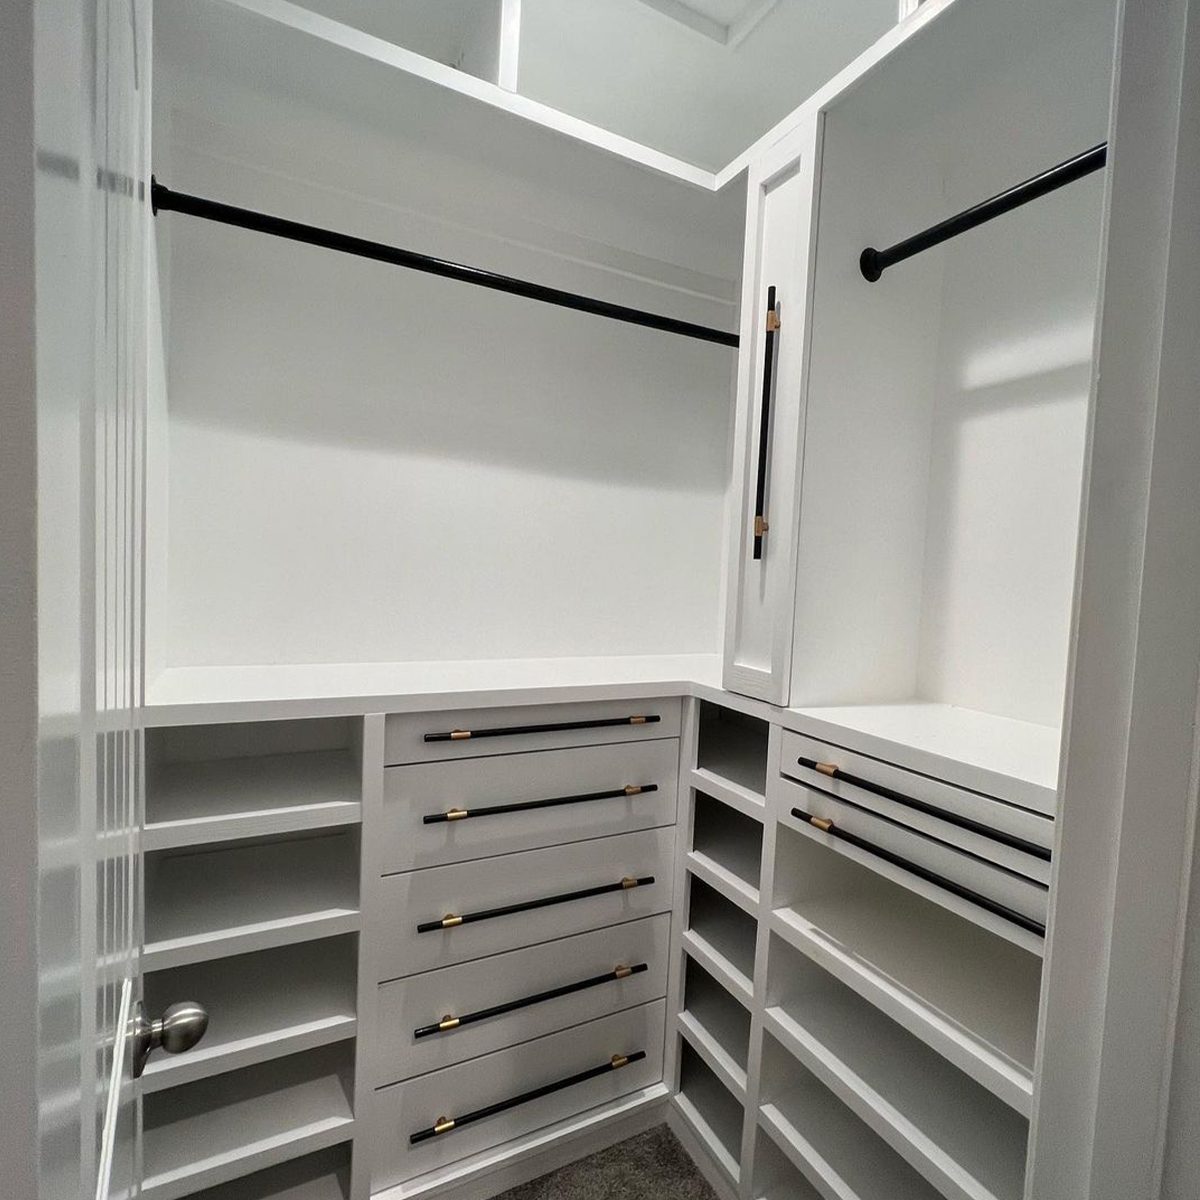 10 Bedroom Closet Ideas To Optimize Your Space Diy Closet System Courtesy @builder.baker.boymom